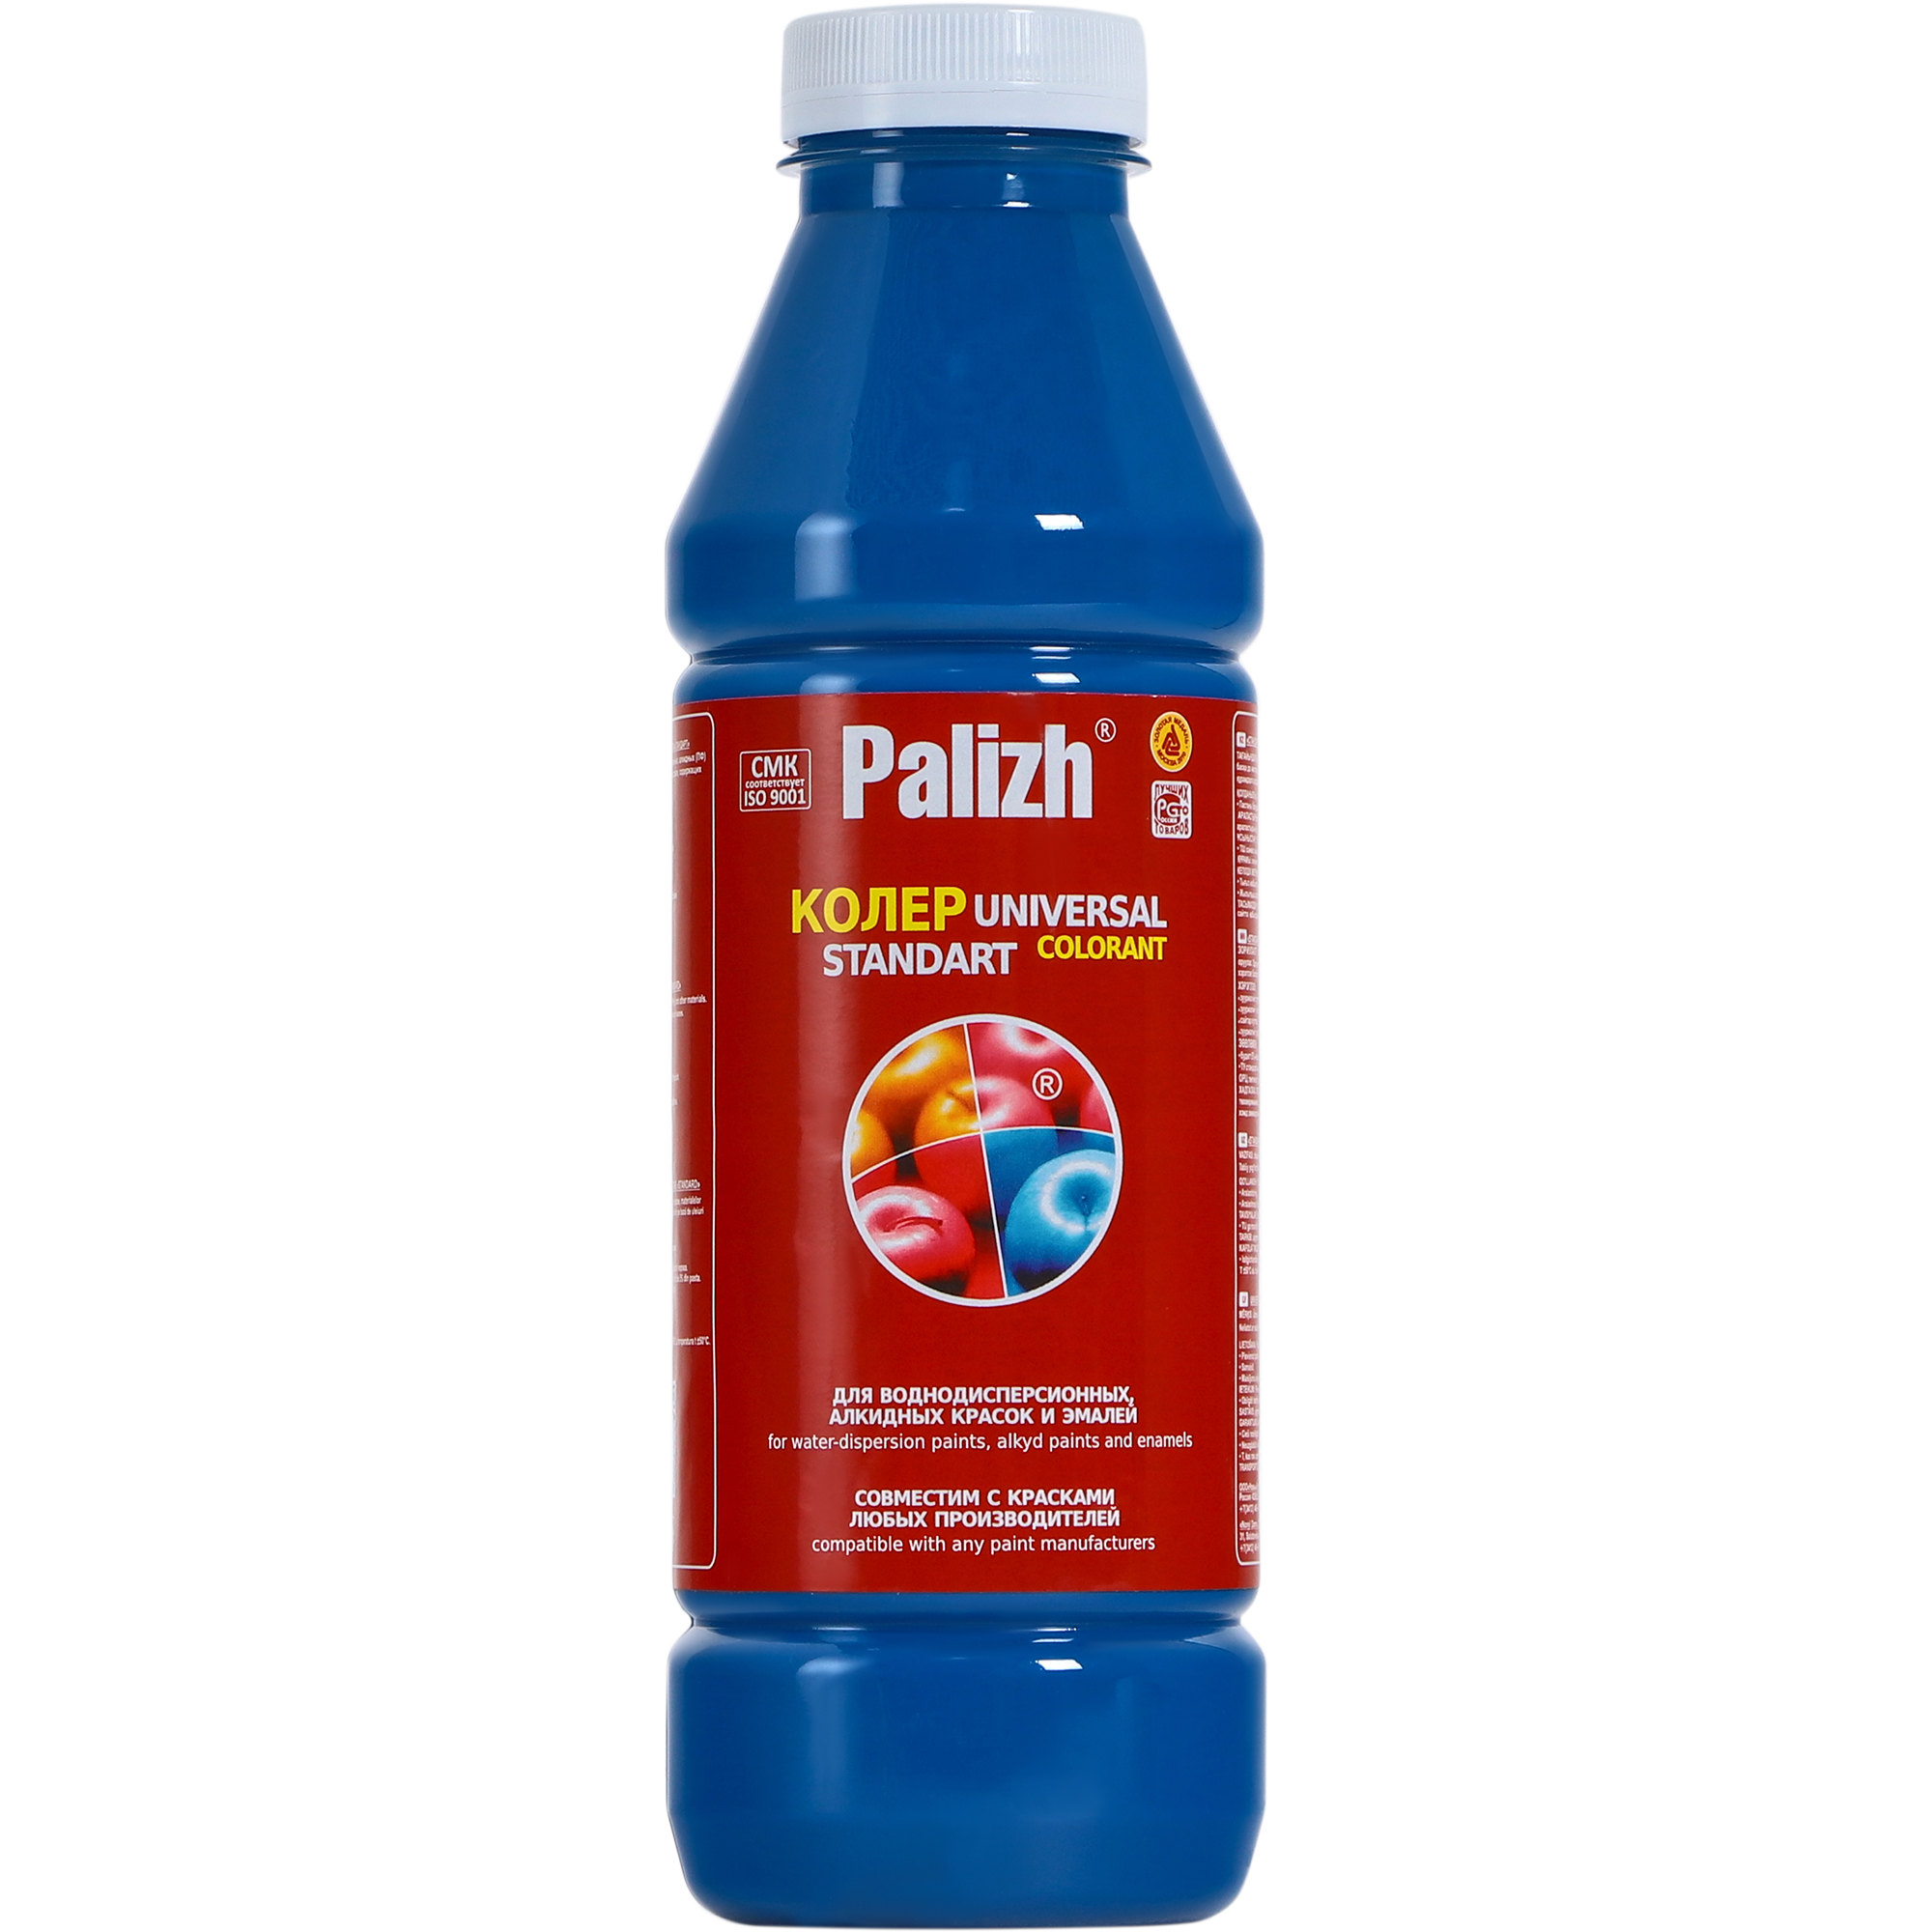 Паста универсальная колеровочная Palizh голубой - 900 мл паста универсальная колеровочная palizh салатный 100 мл